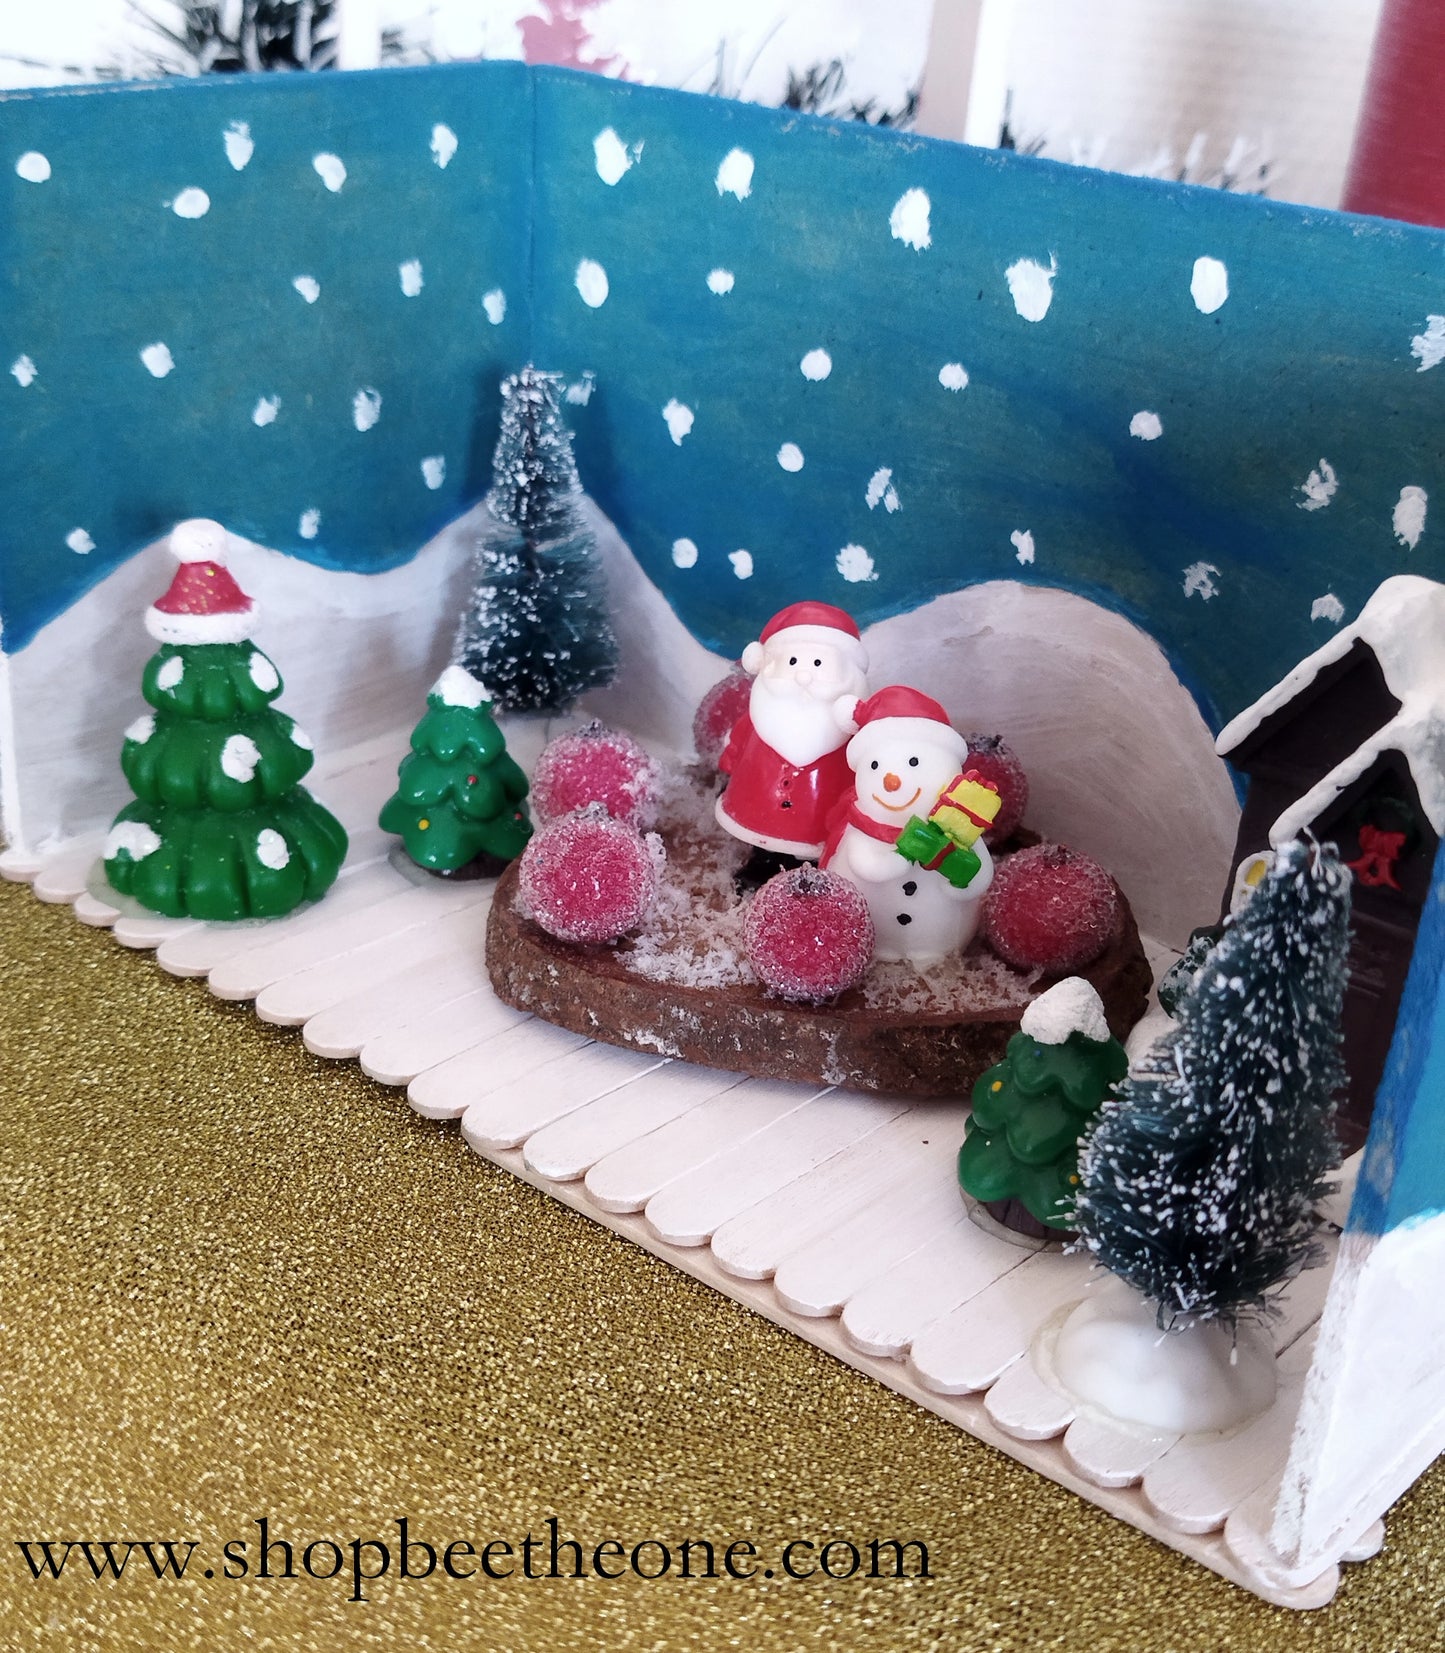 Décoration - Décor présentoir "Village de Noël" avec figurines et rondin en bois